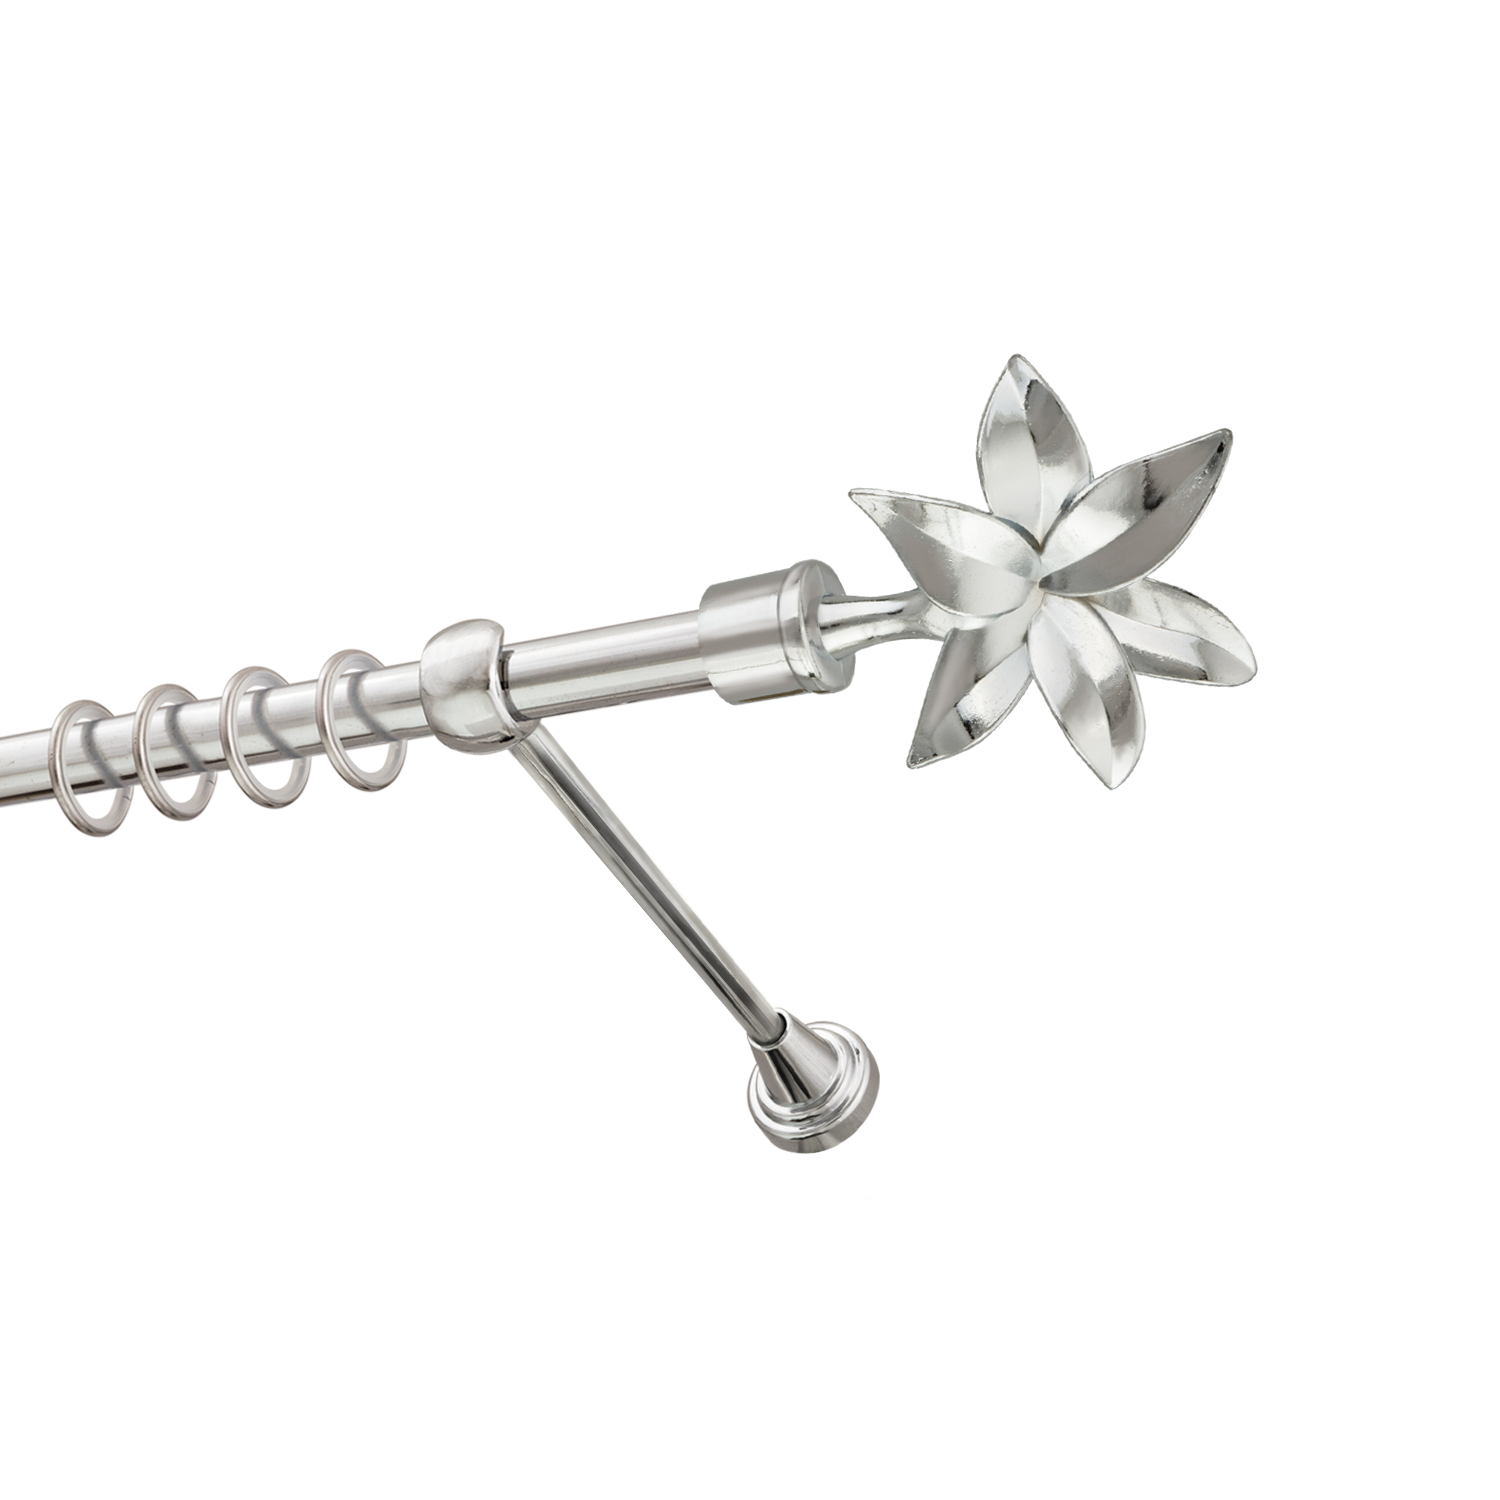 Металлический карниз для штор Магнолия, однорядный 16 мм, серебро, гладкая штанга, длина 140 см - фото Wikidecor.ru